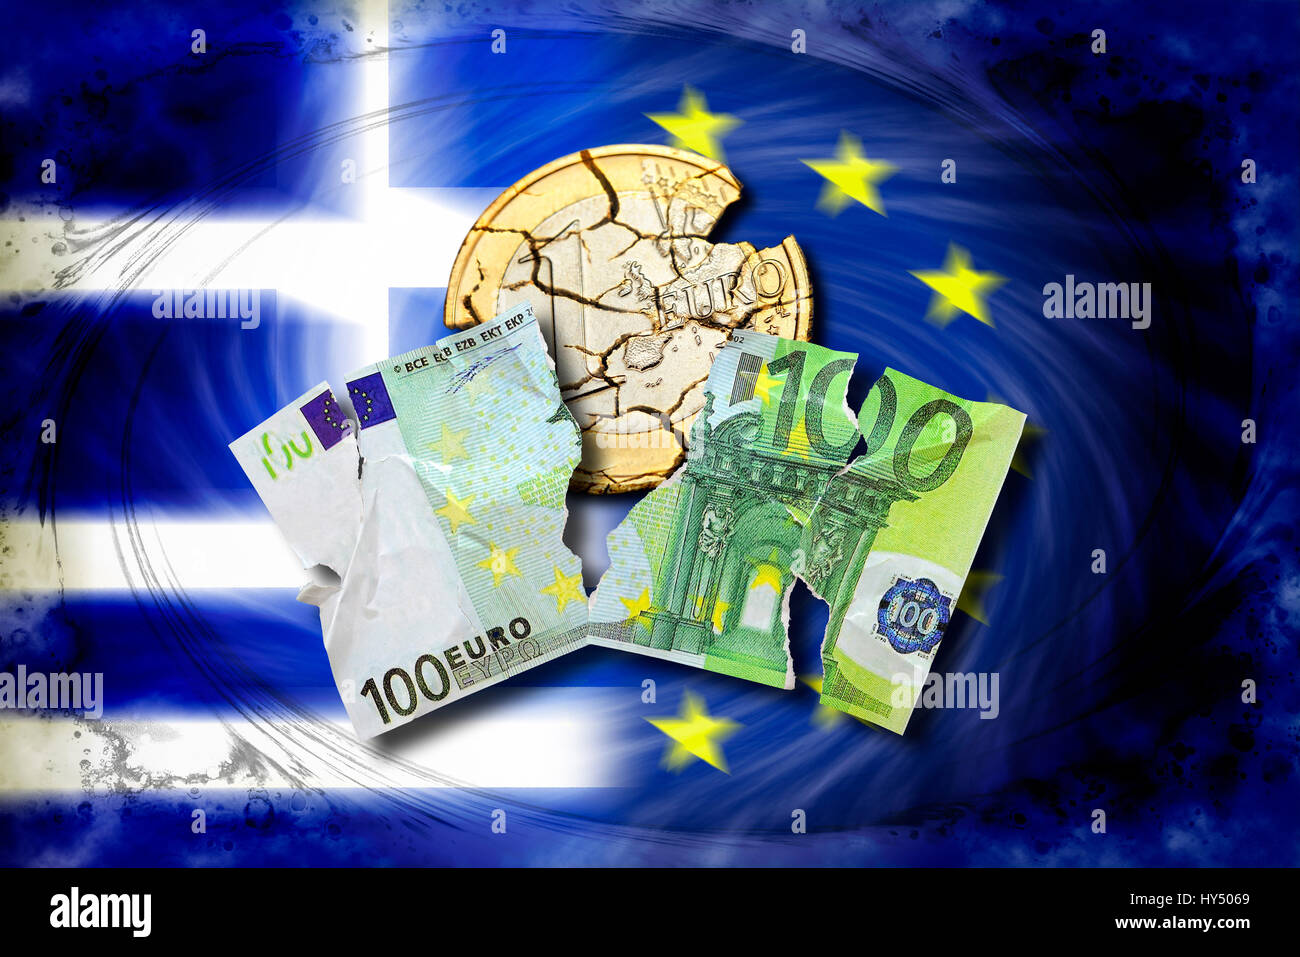 100 déchiré-euro-light et ruiné euro avant que la Grèce et l'Union européenne drapeau, photo symbolique Grexit, Zerrissener Euro-Schein zerfallene 100-Euromuenze und vor Gr Banque D'Images